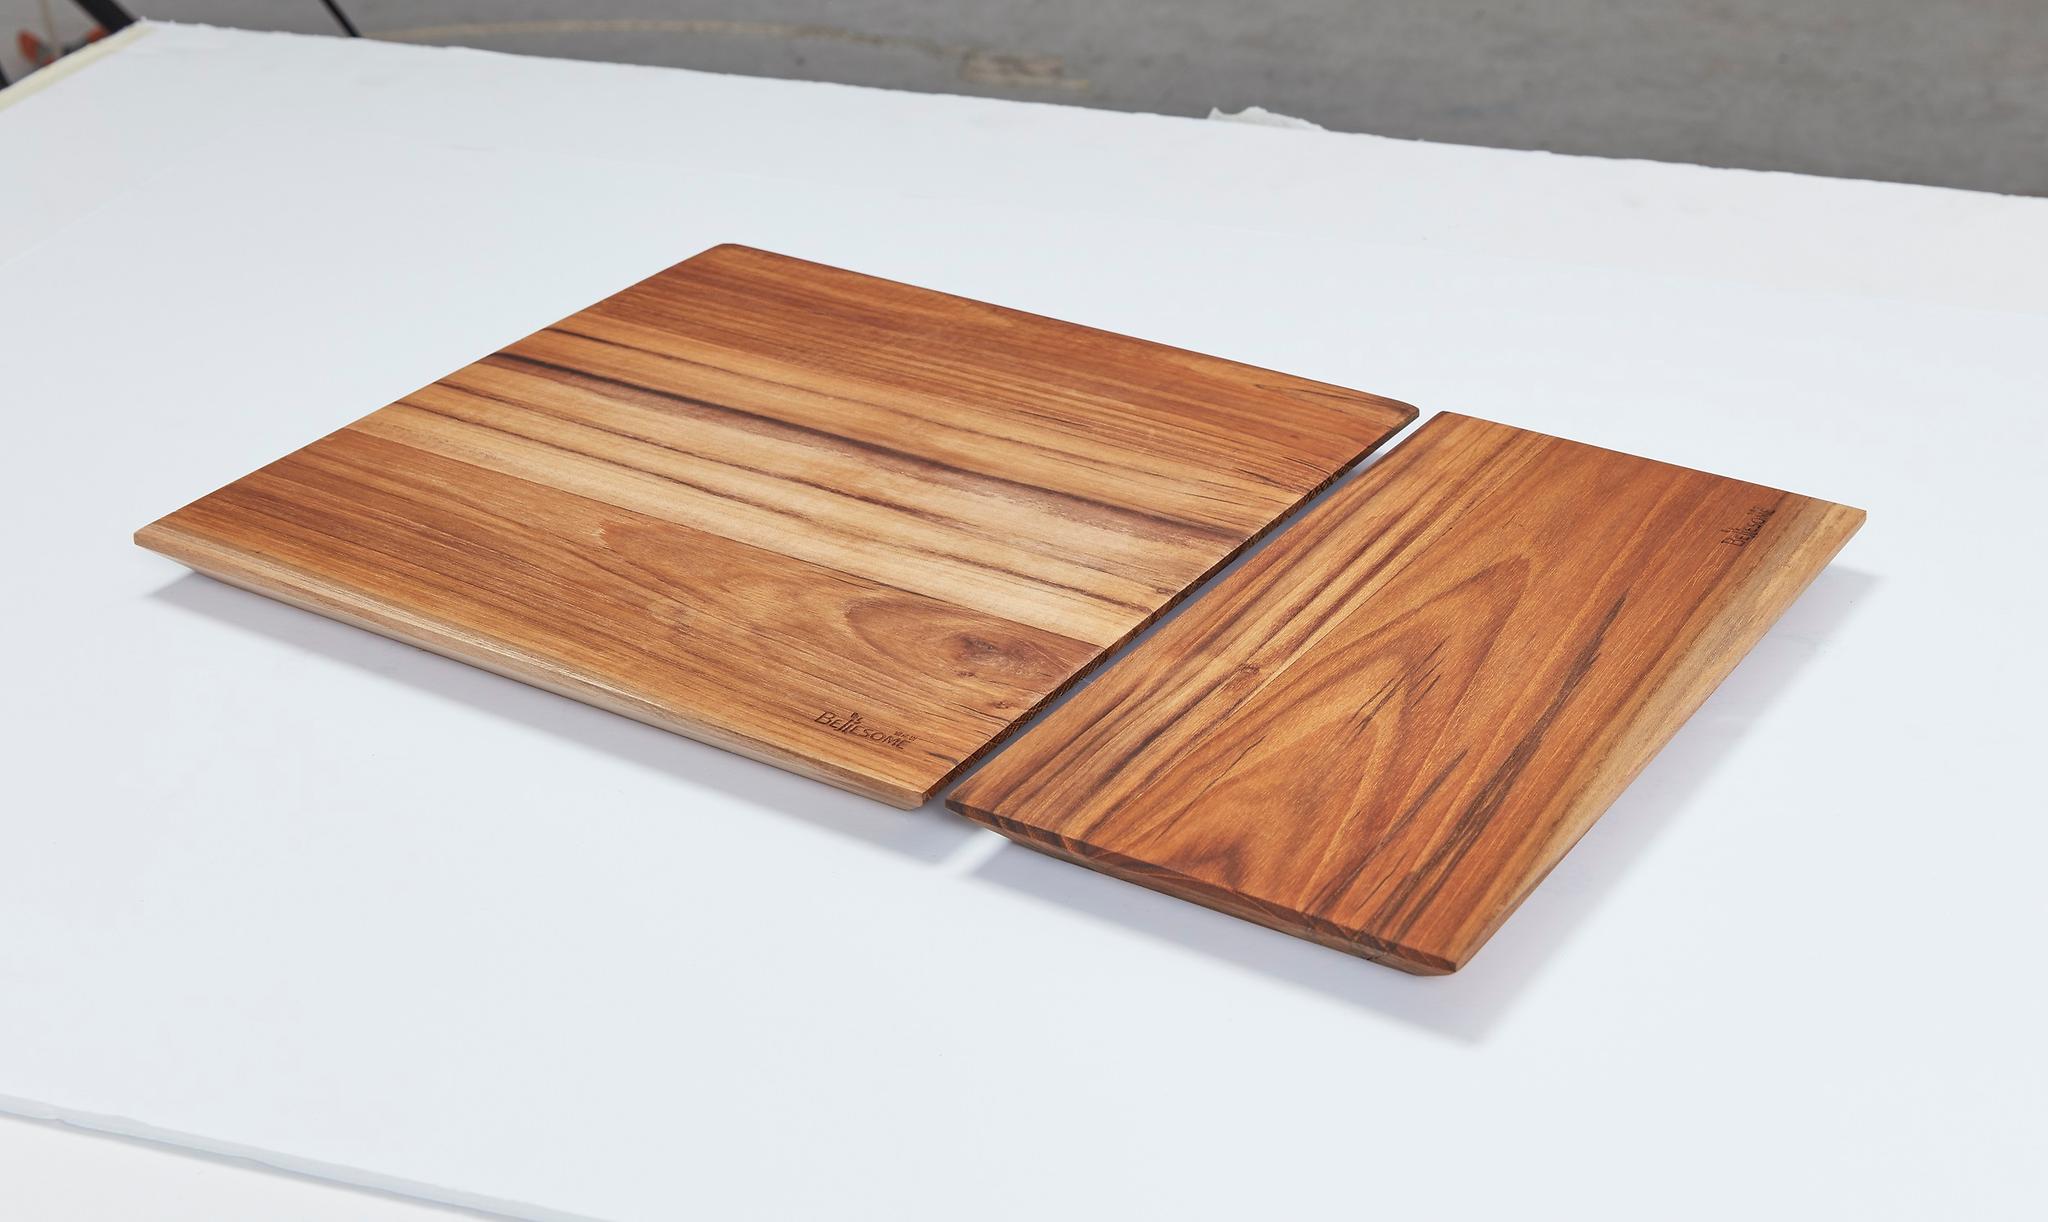 천연목재 플레이트 도마 제품 세 번째 큰 사진